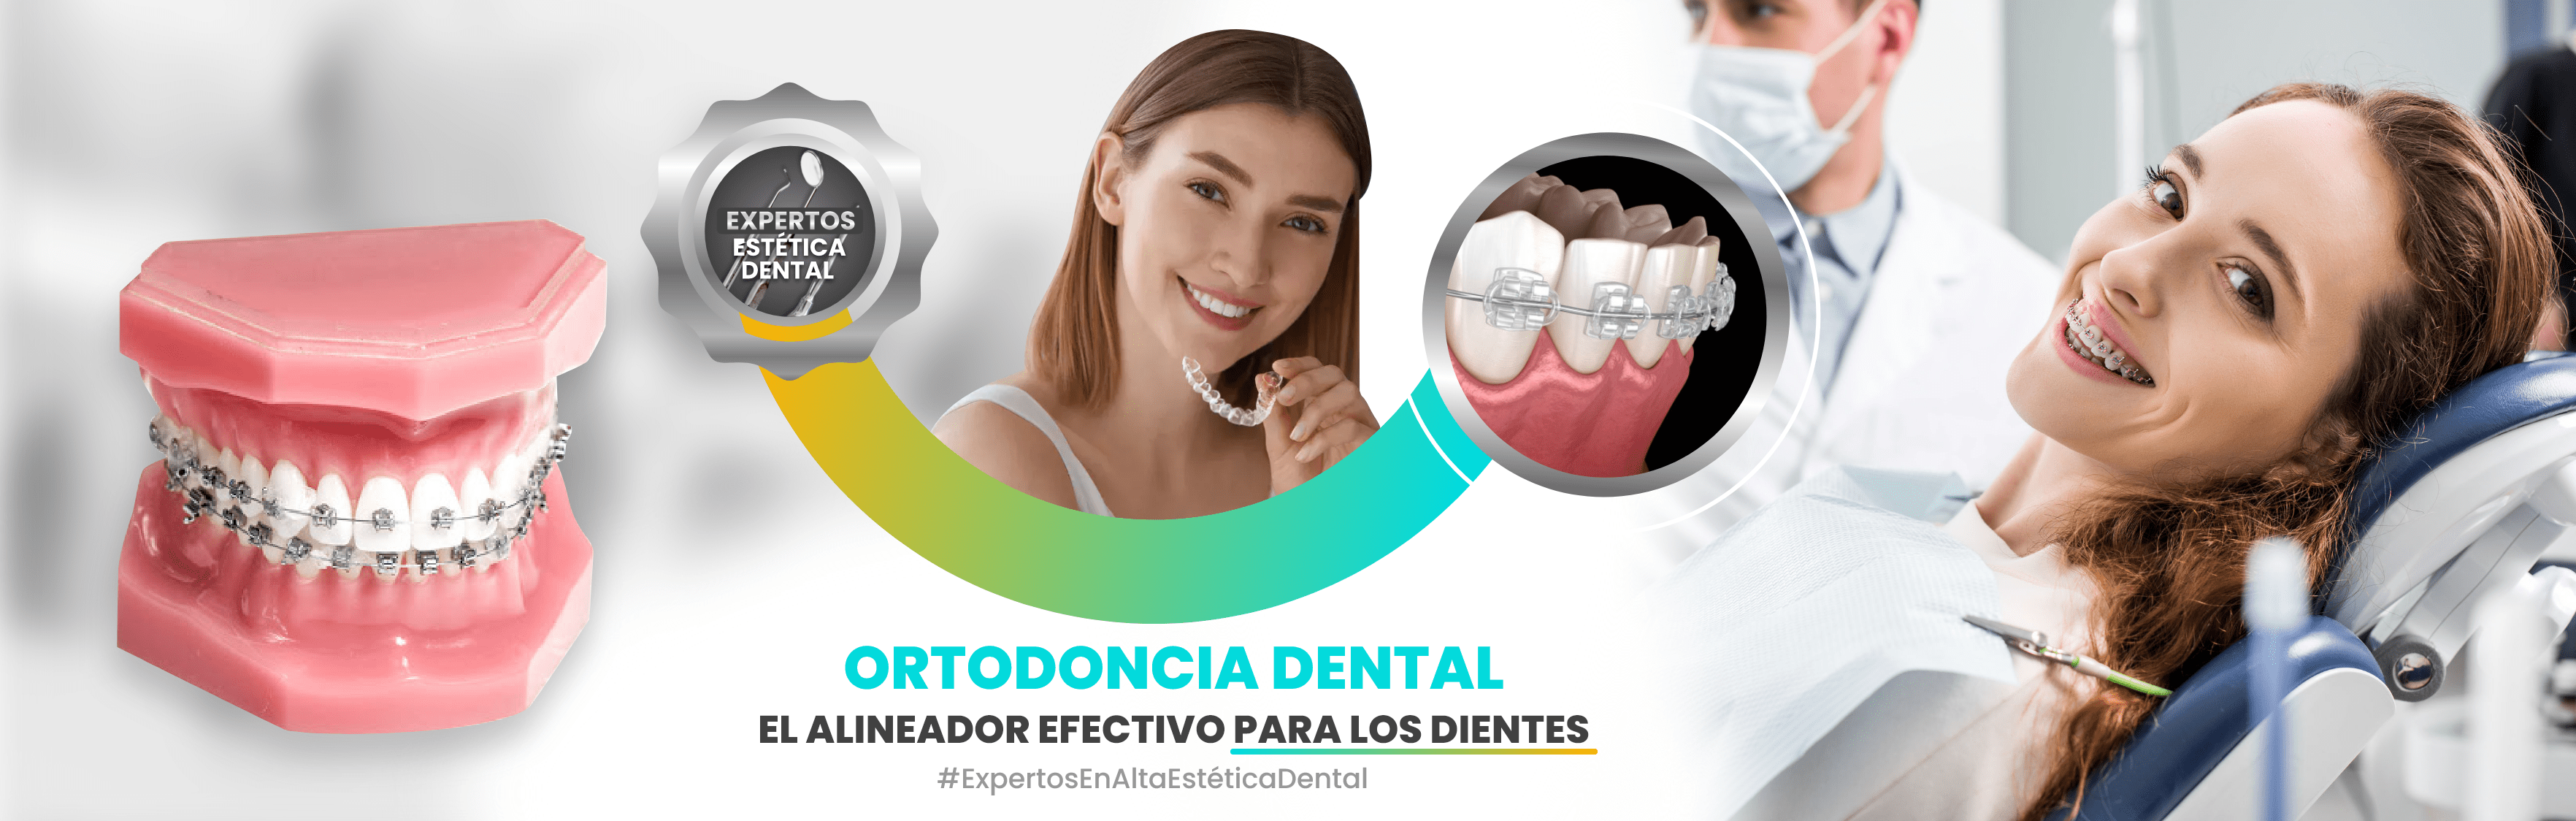 Como limpiar los alineadores dentales - Clínica dental Díaz López